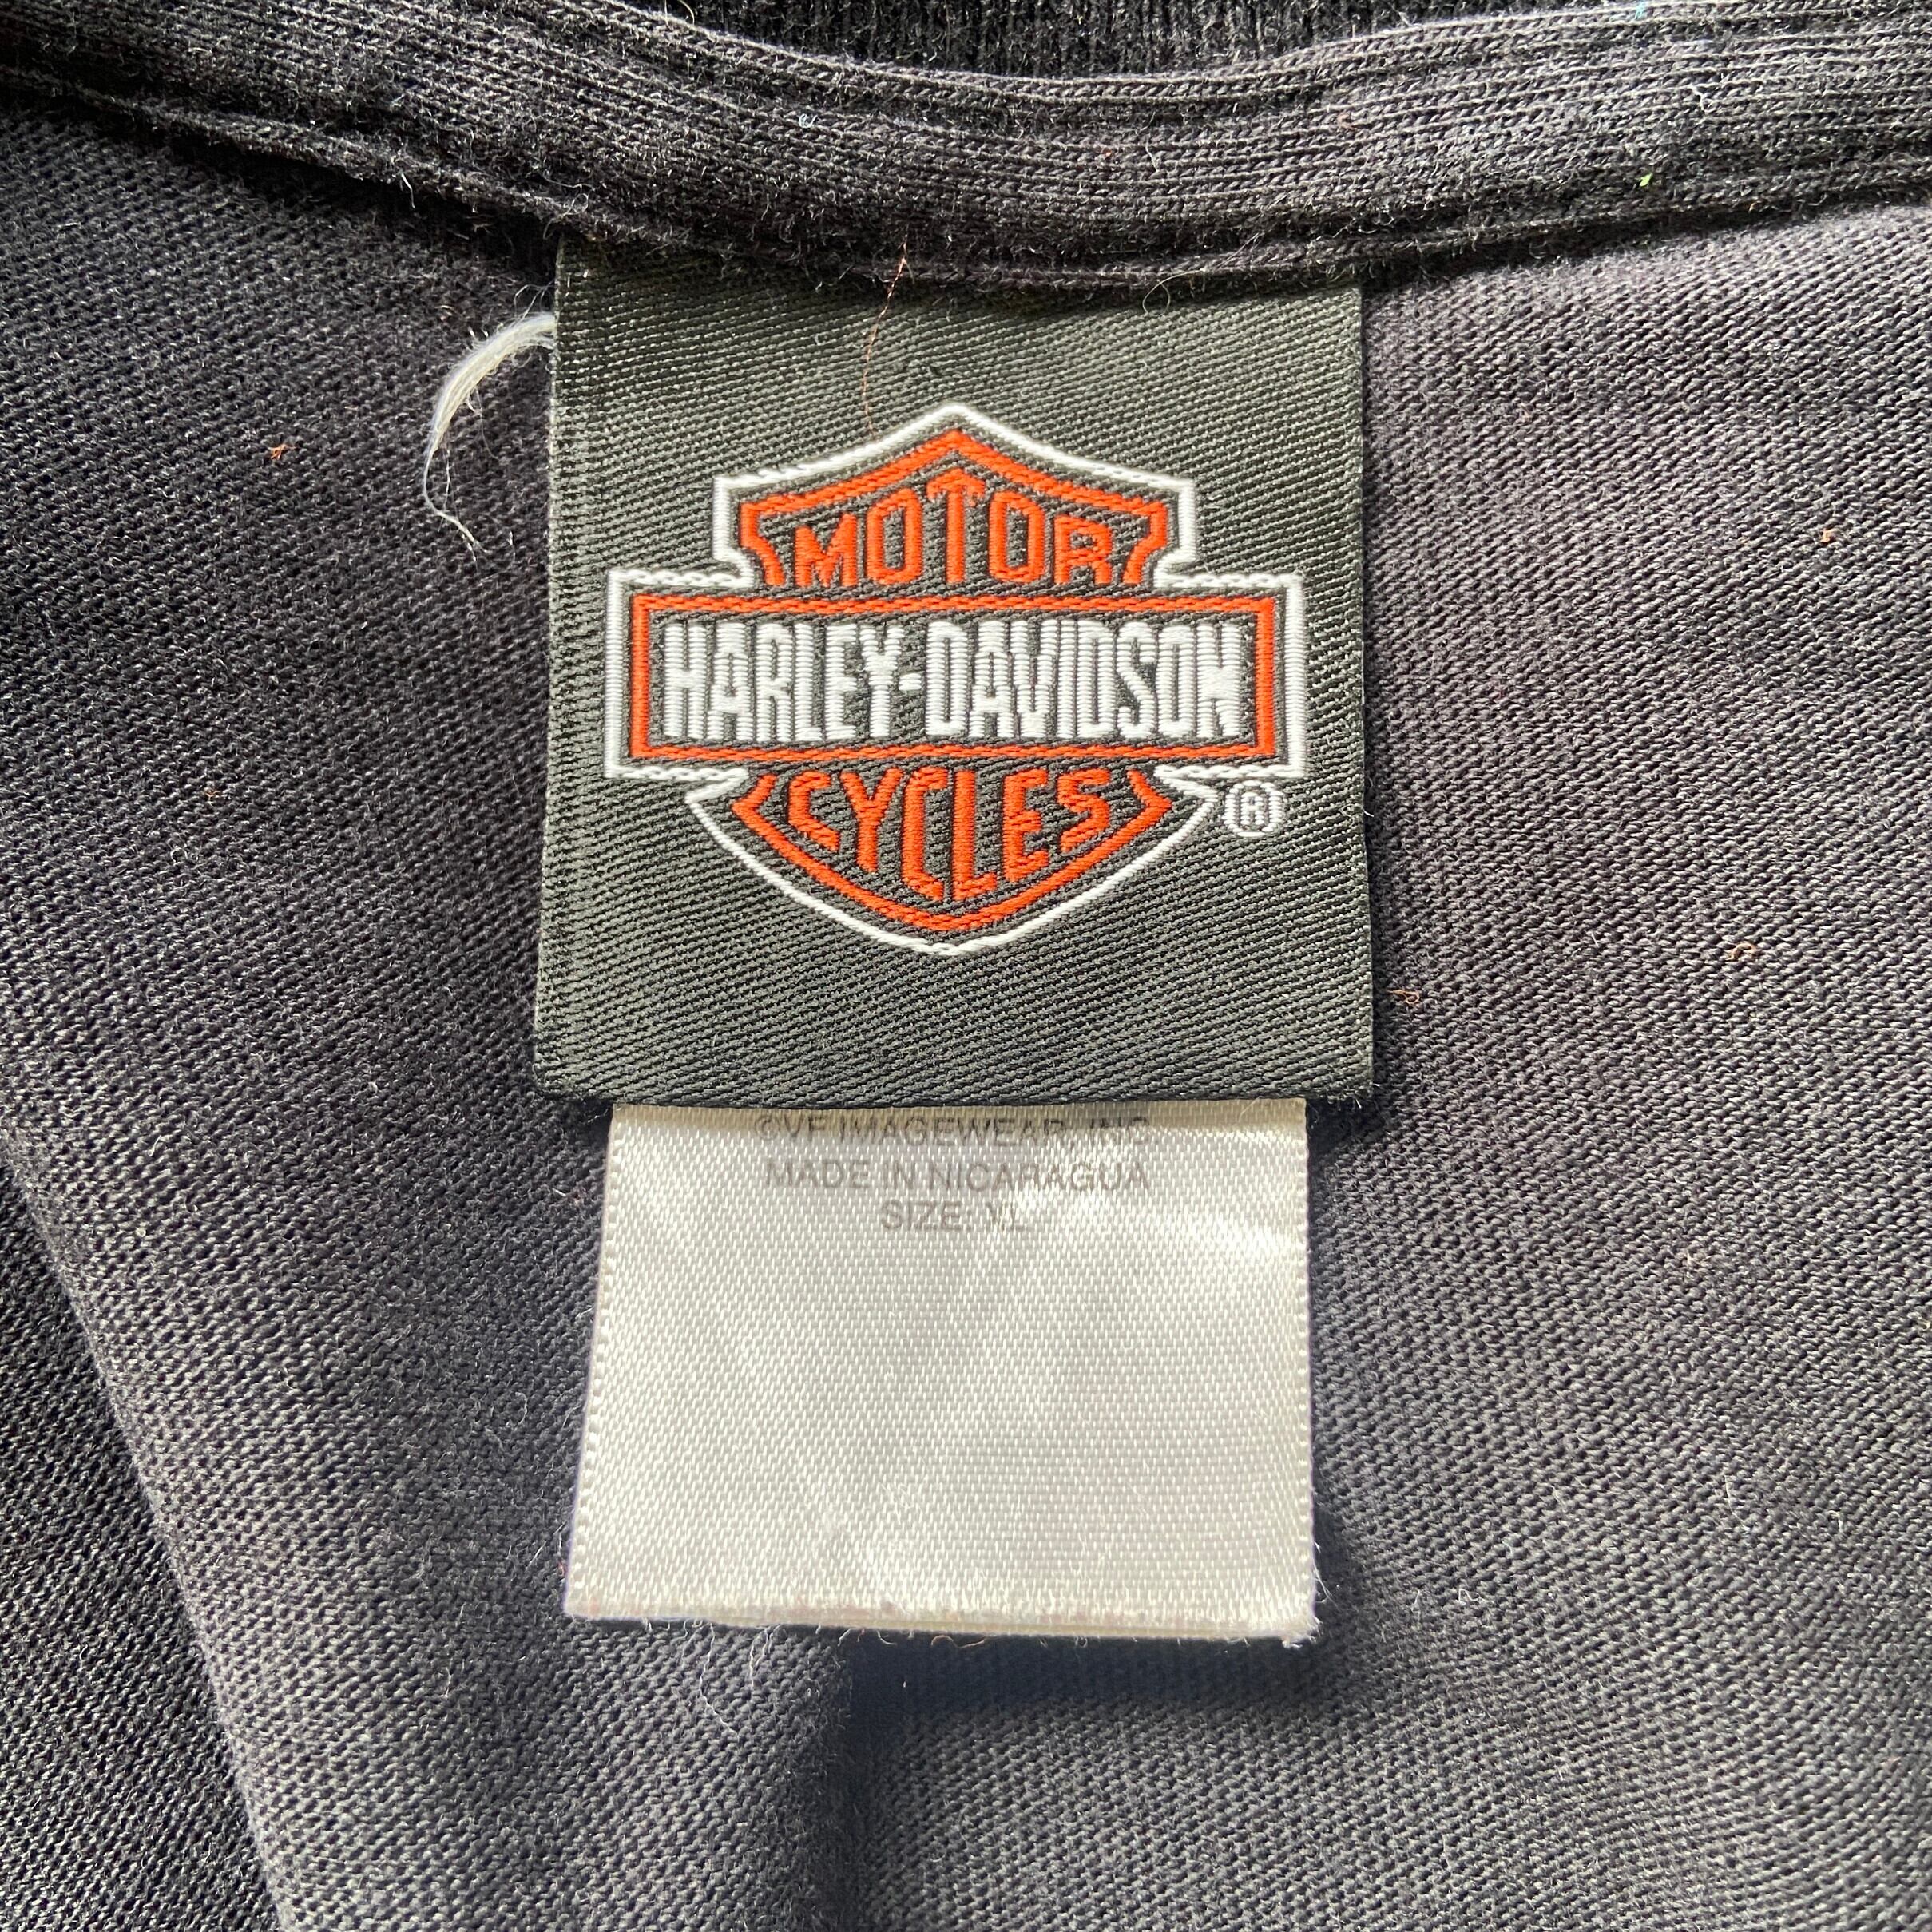 Harley-Davidson ハーレーダビッドソン 両面プリント カットオフ ...